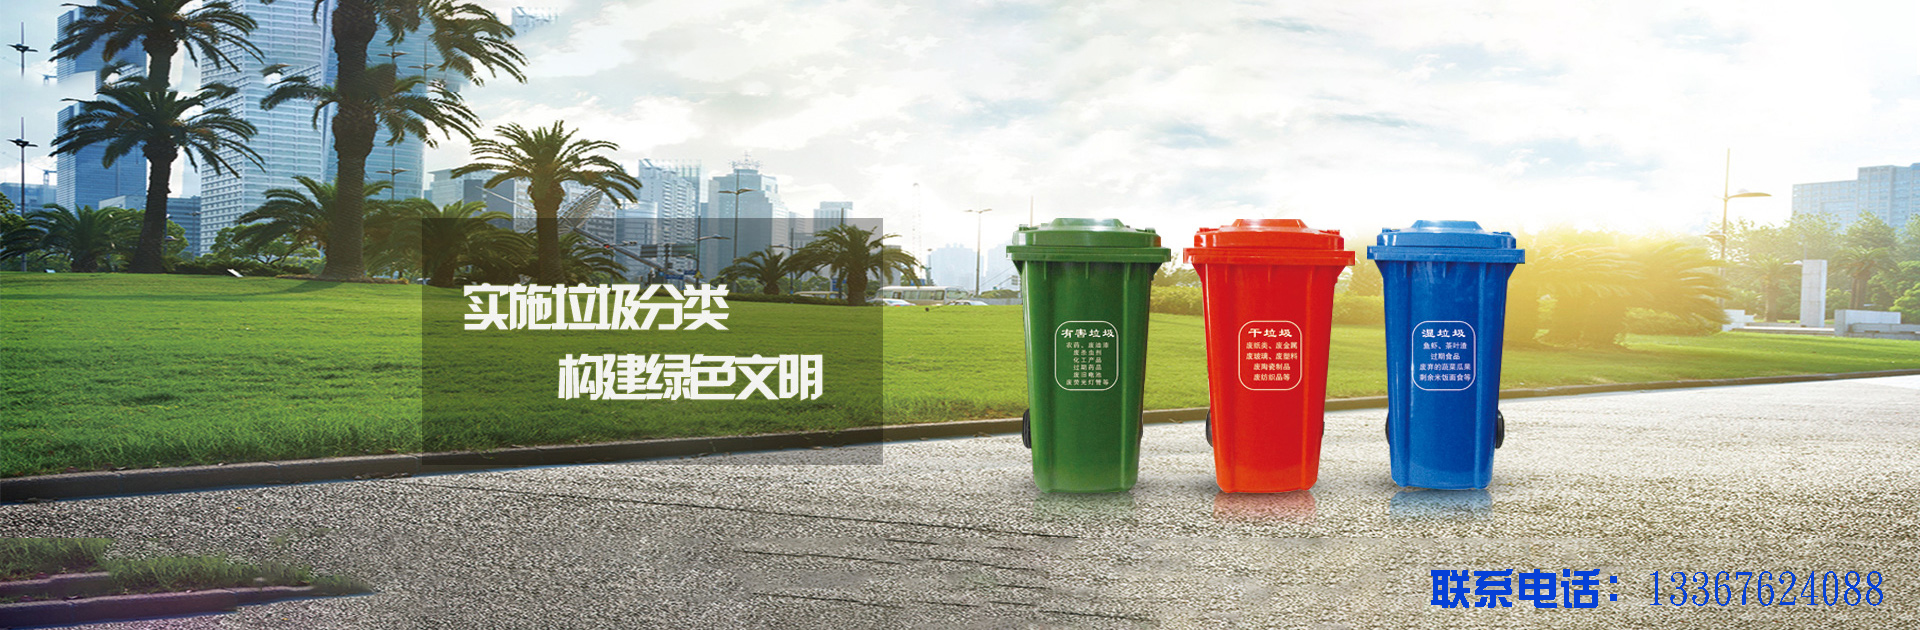 柳州垃圾桶,柳州塑料垃圾桶,廣西垃圾桶